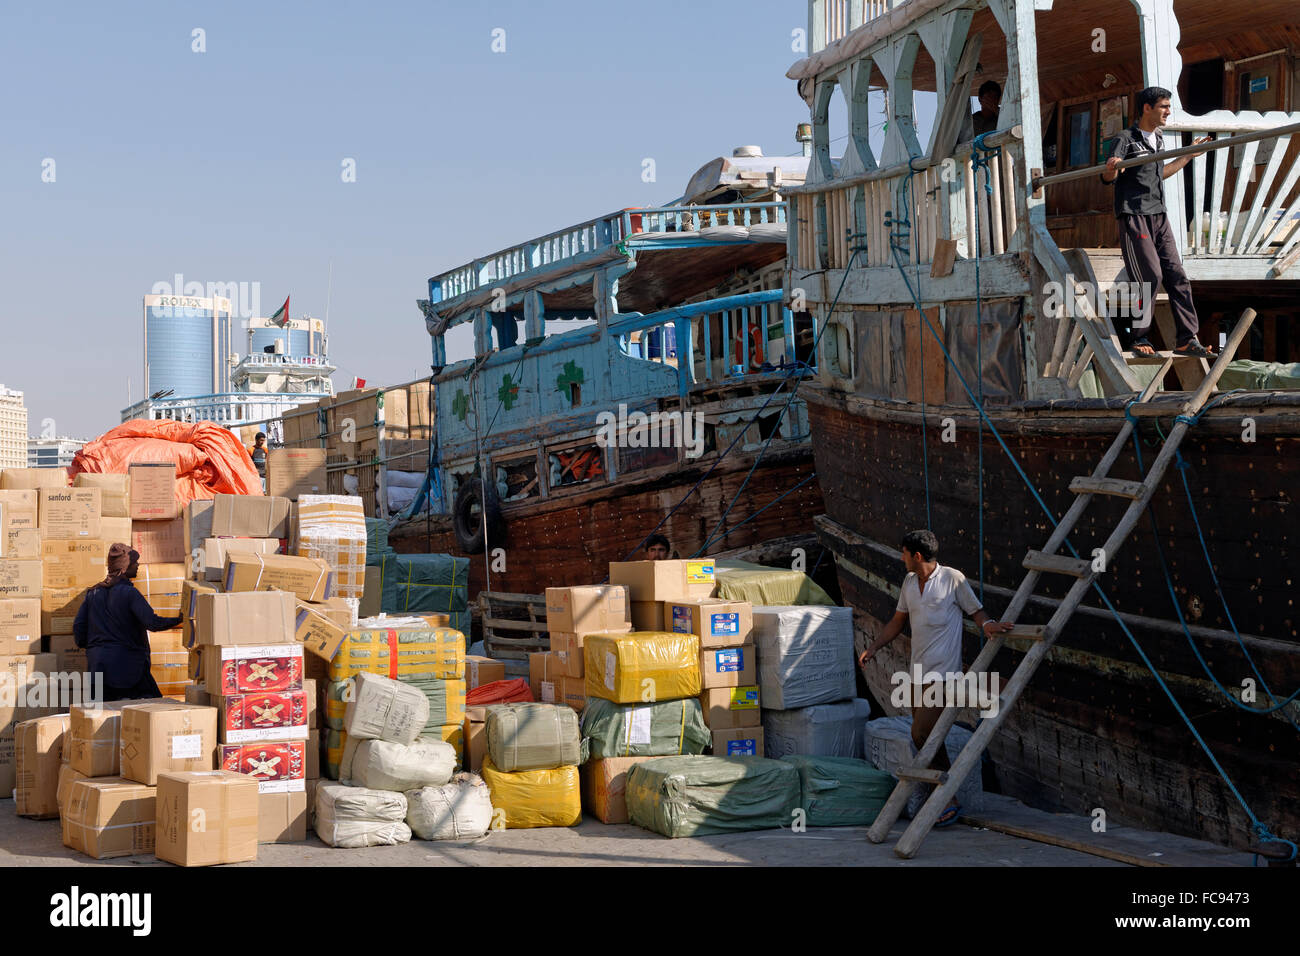 Handel mit Dhaus an den Docks des Dubai Creek, Deira, Dubai, Vereinigte Arabische Emirate, Naher Osten Stockfoto